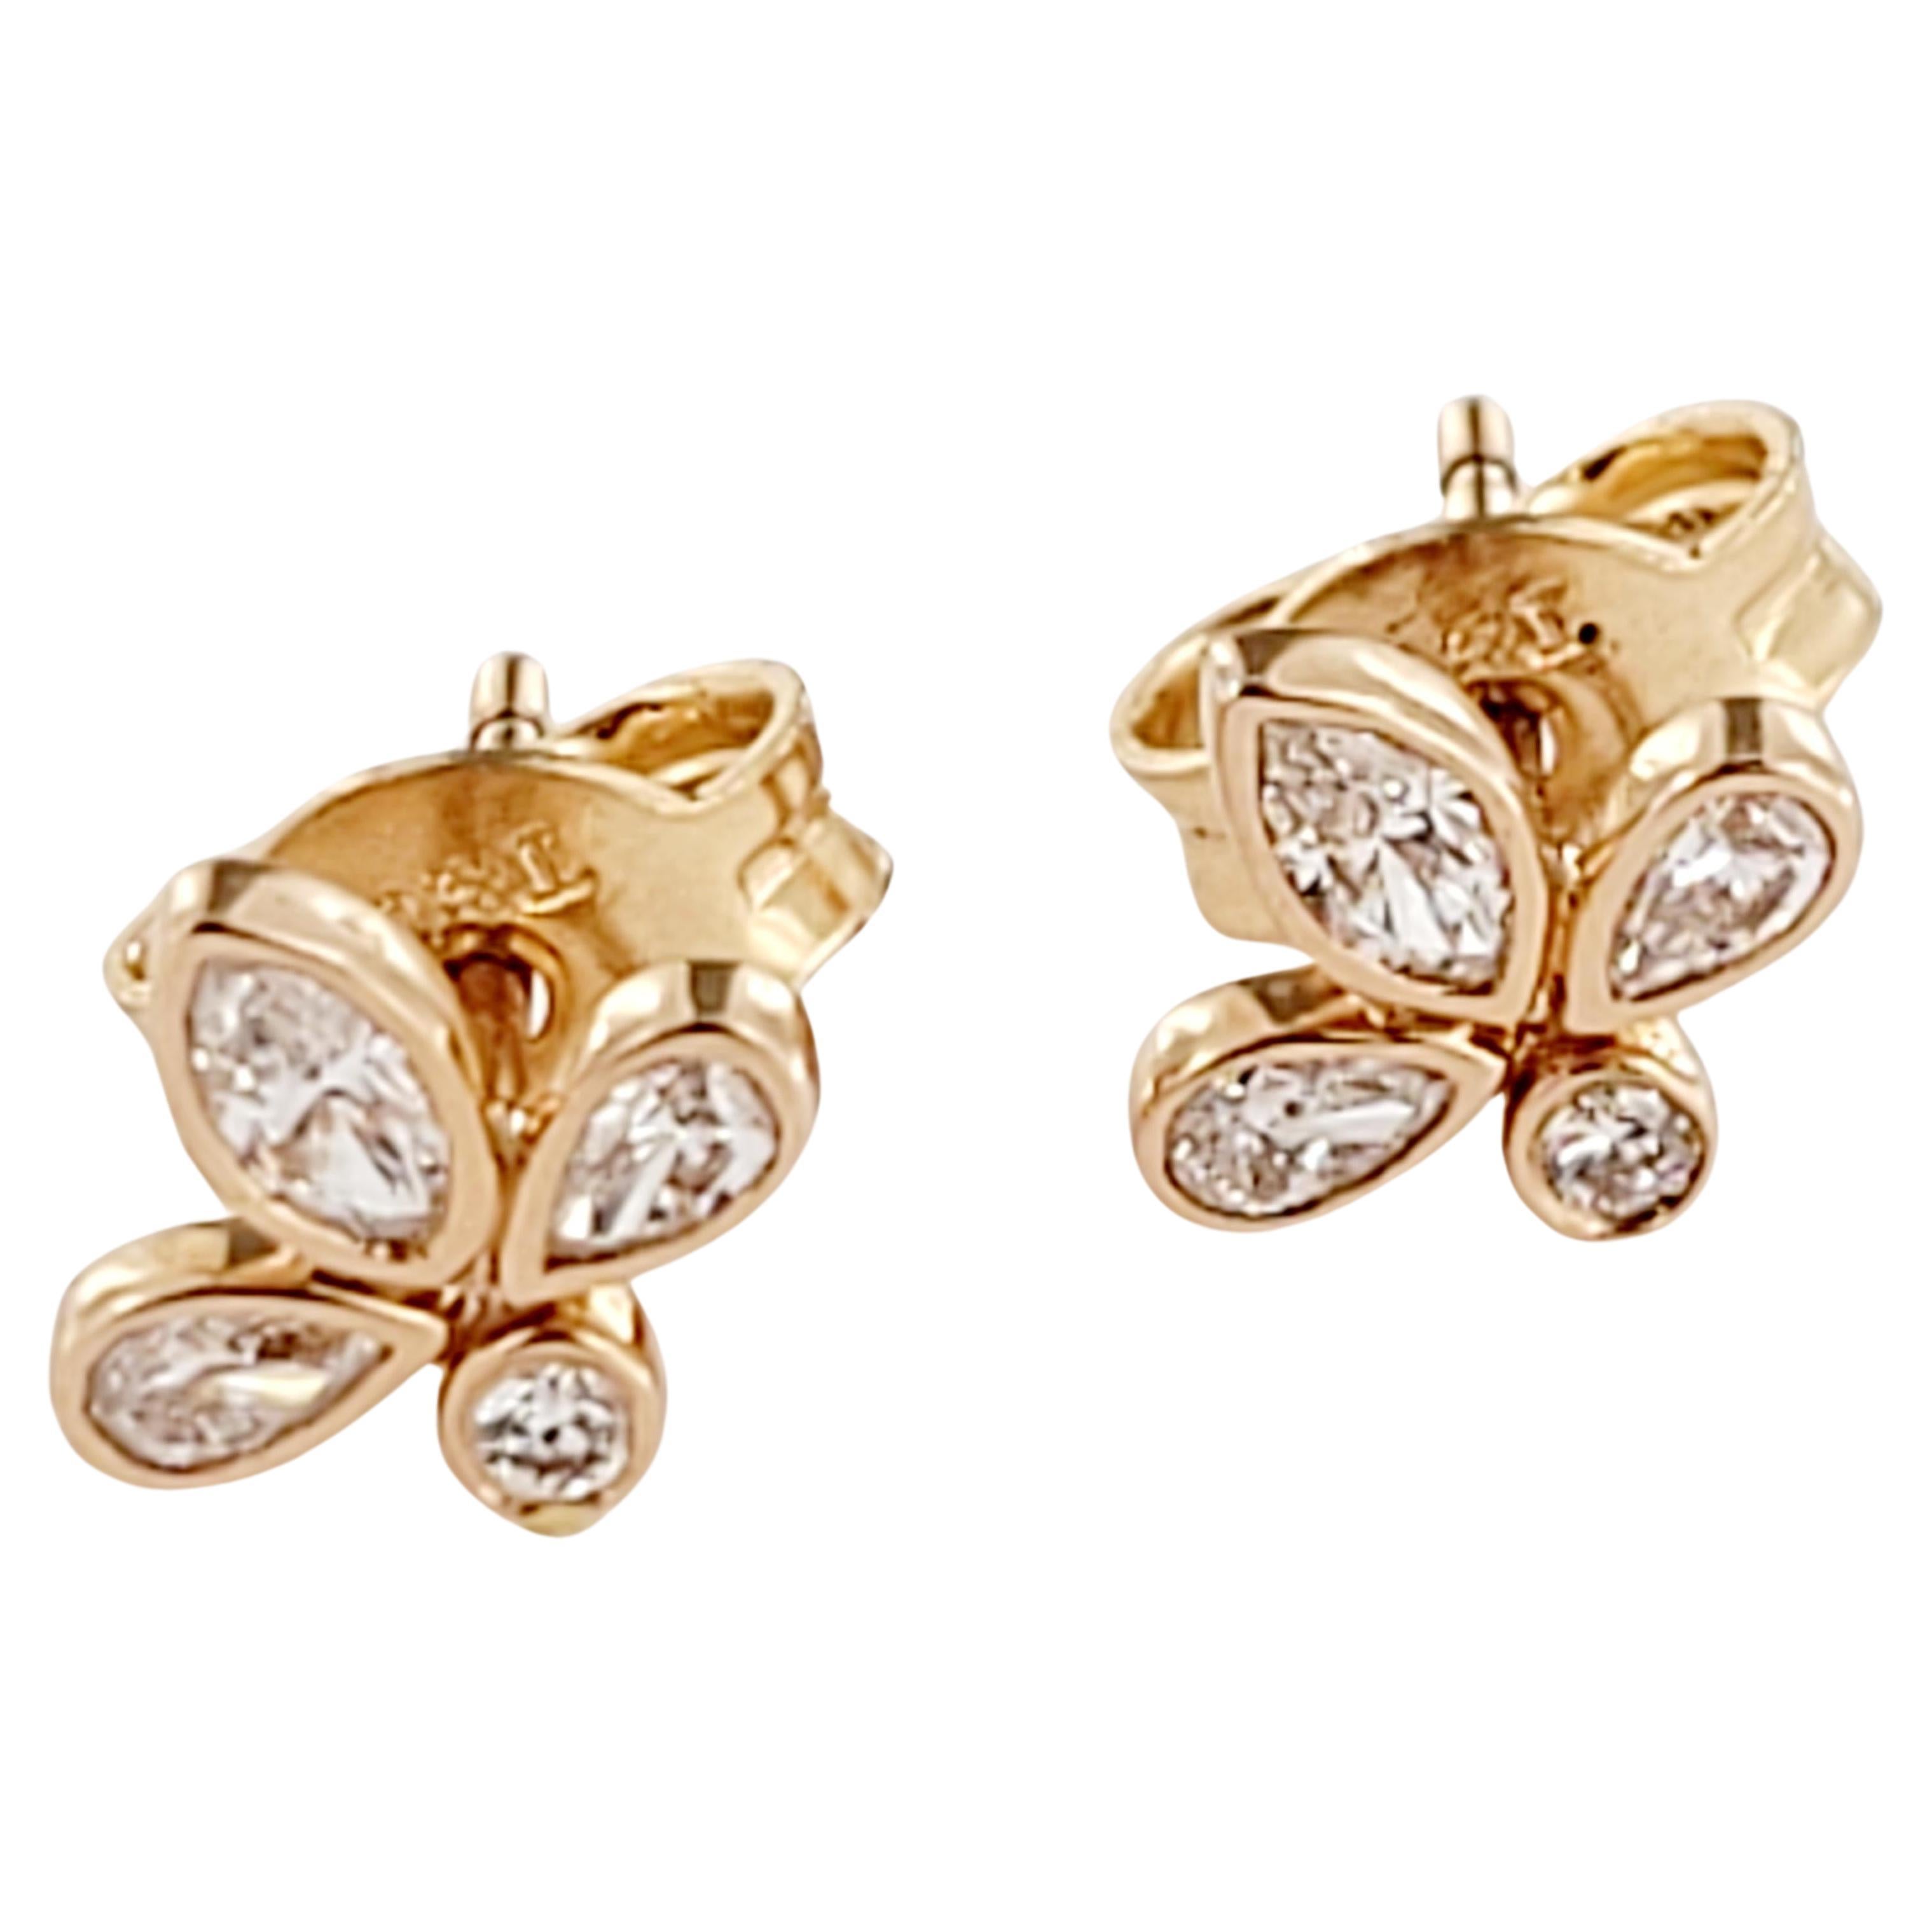 Tiffany & Co. Fleur de Lis Diamond Stud Earring in 18k Rose Gold 0.19 CTW